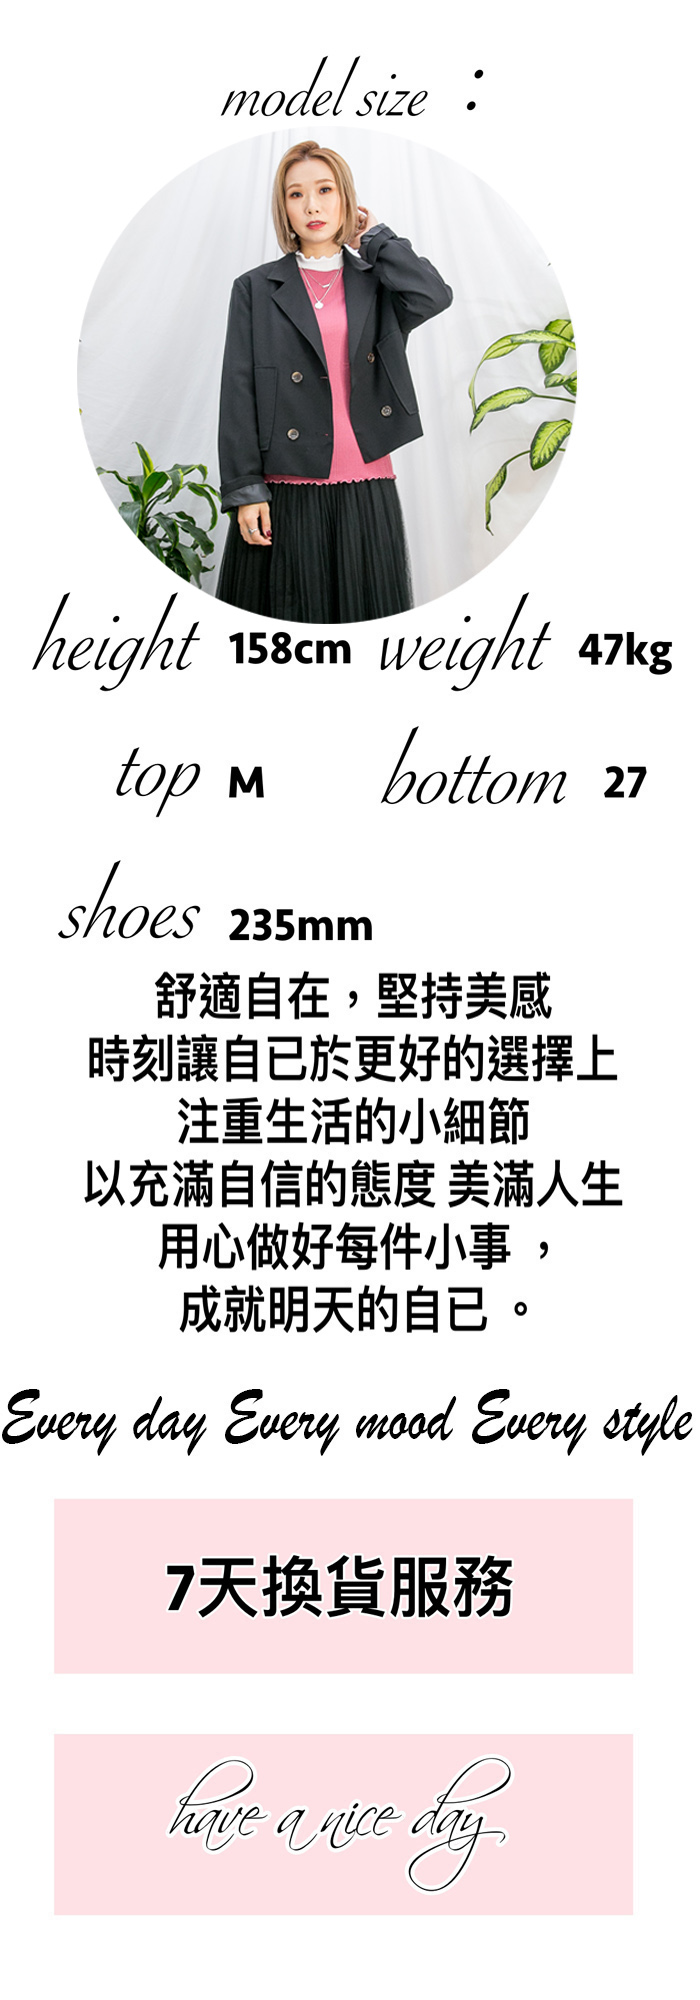 2117-1017 - 超舒服 -尖頭 X 真皮 , 紳士鞋 